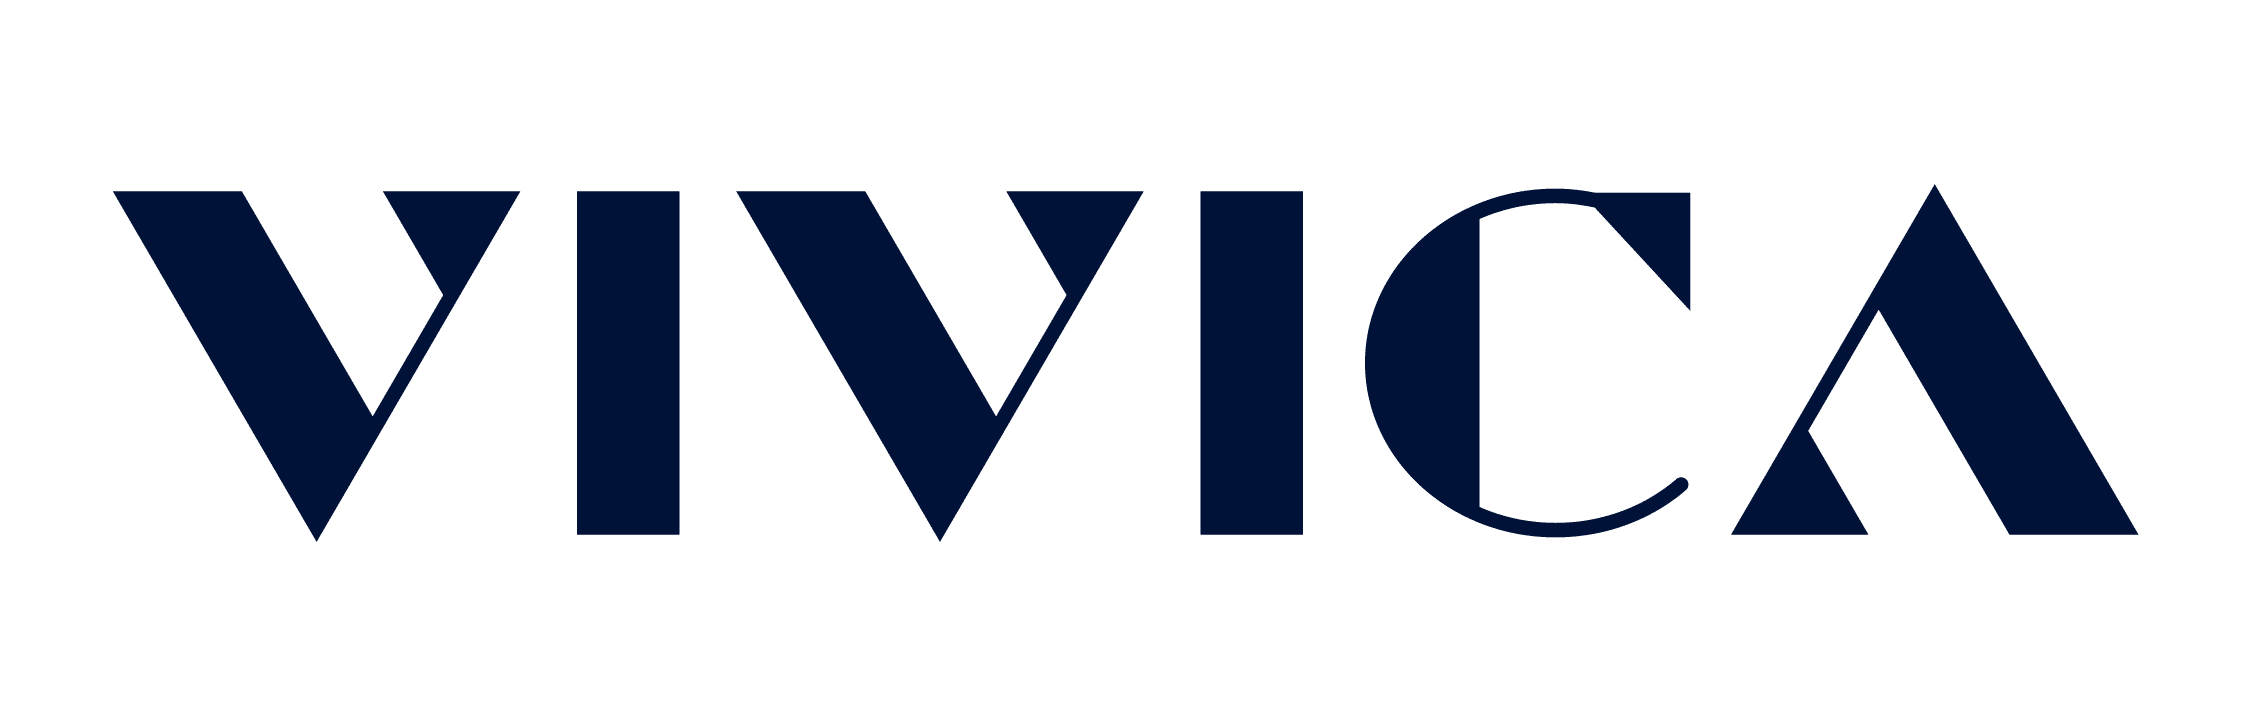 Contact VIVICA - VIVICA